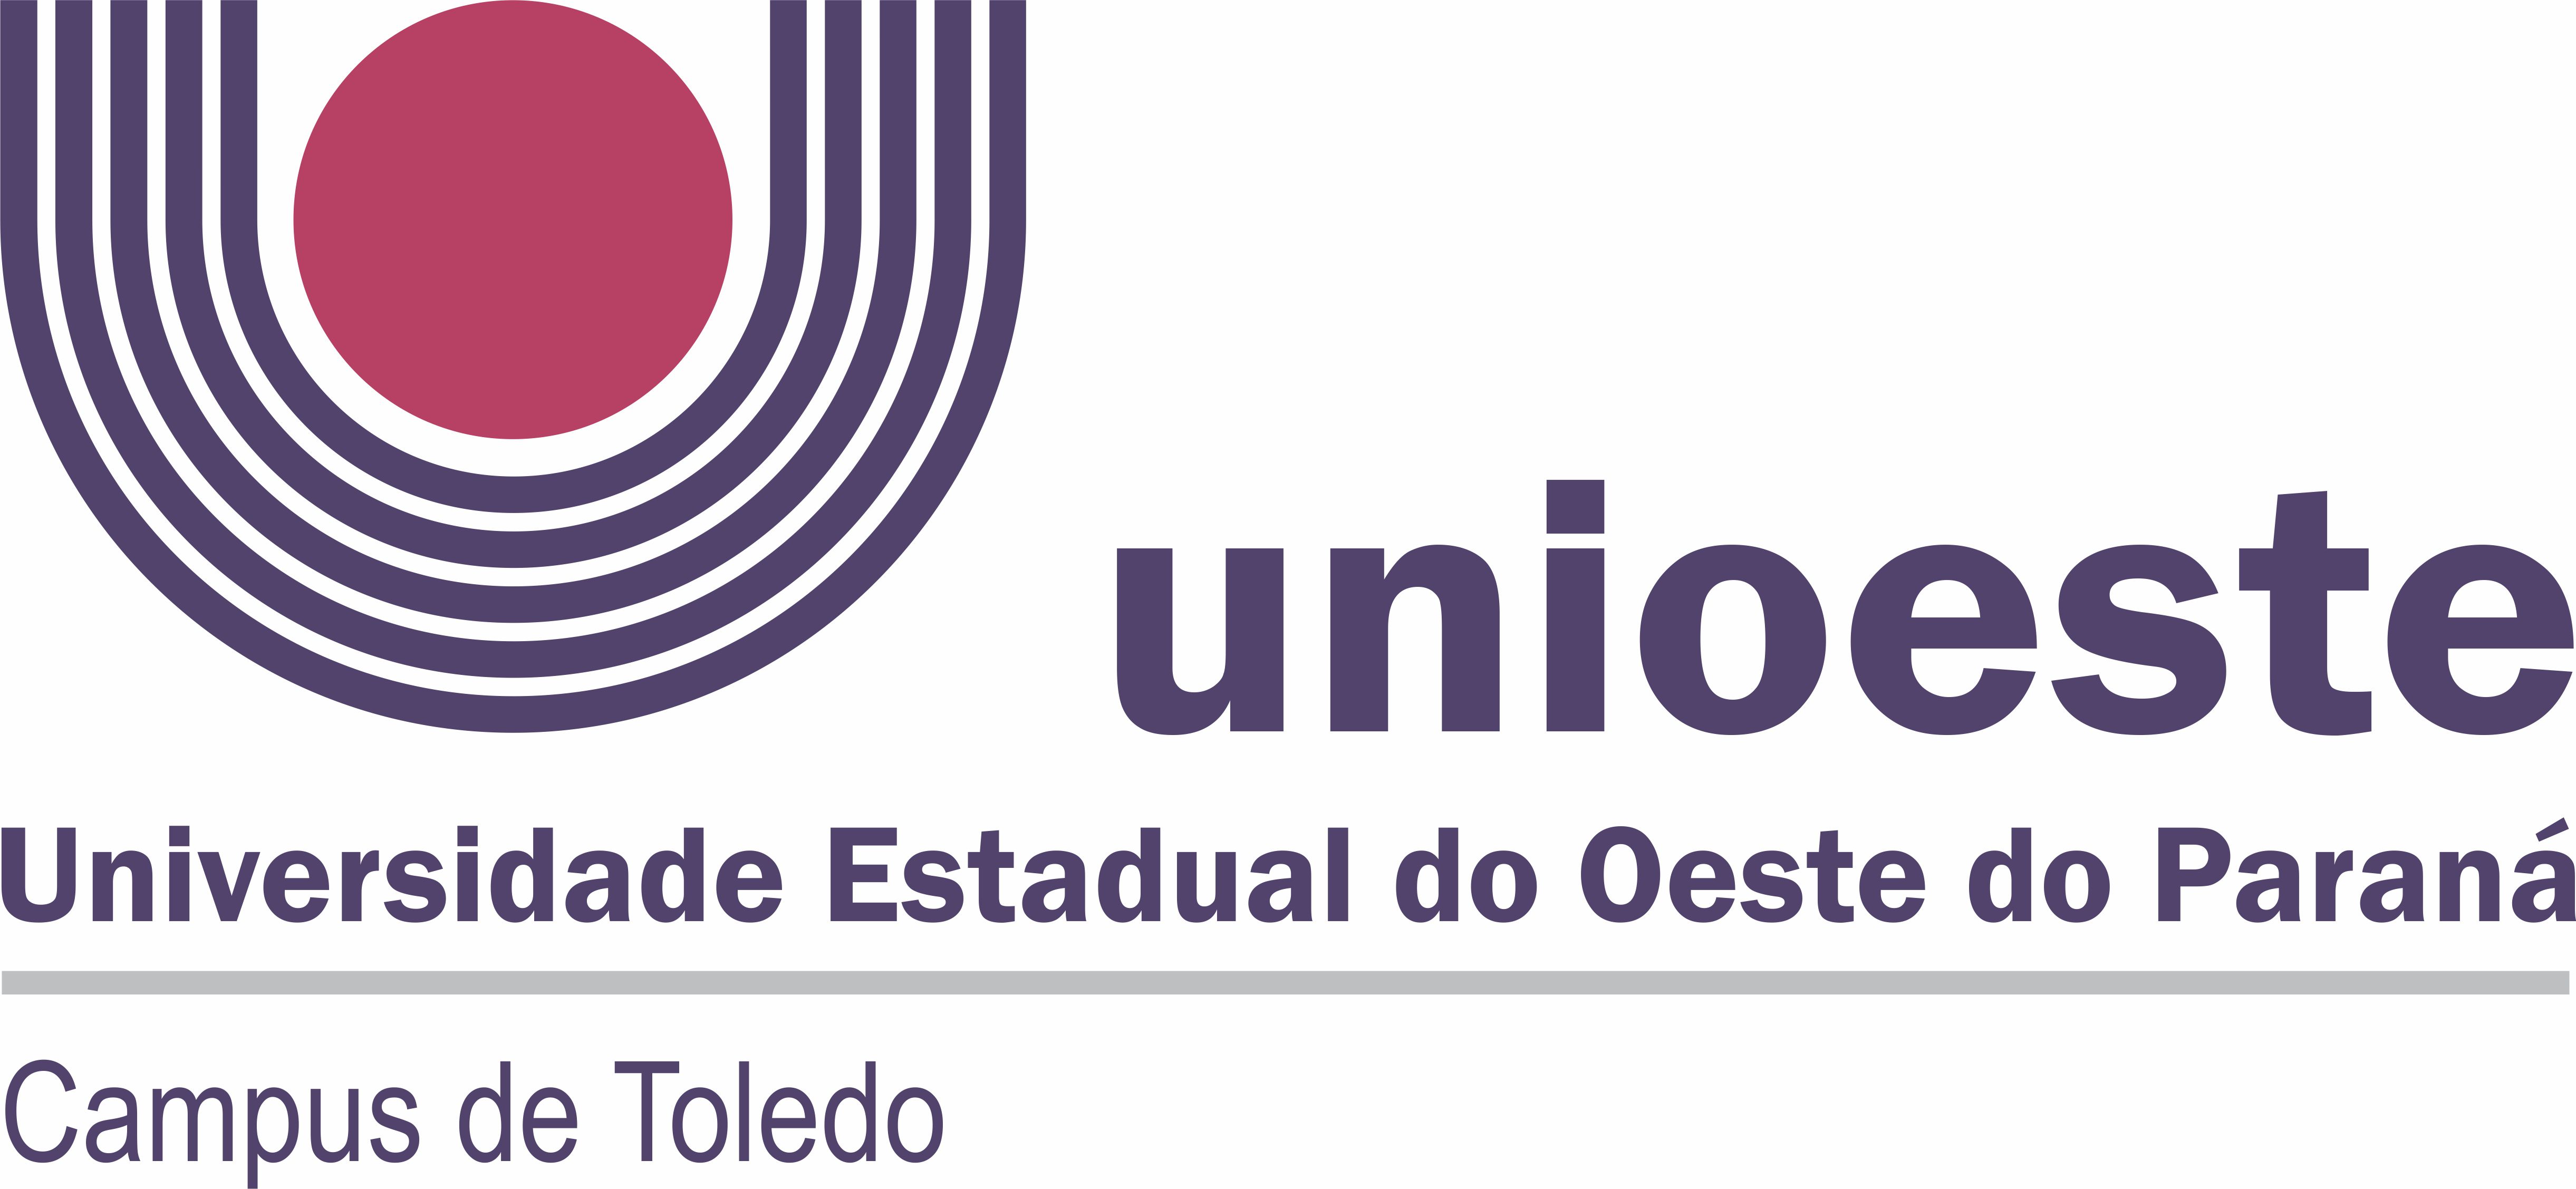 Logotipo Unioeste CAMPUS TOLEDO